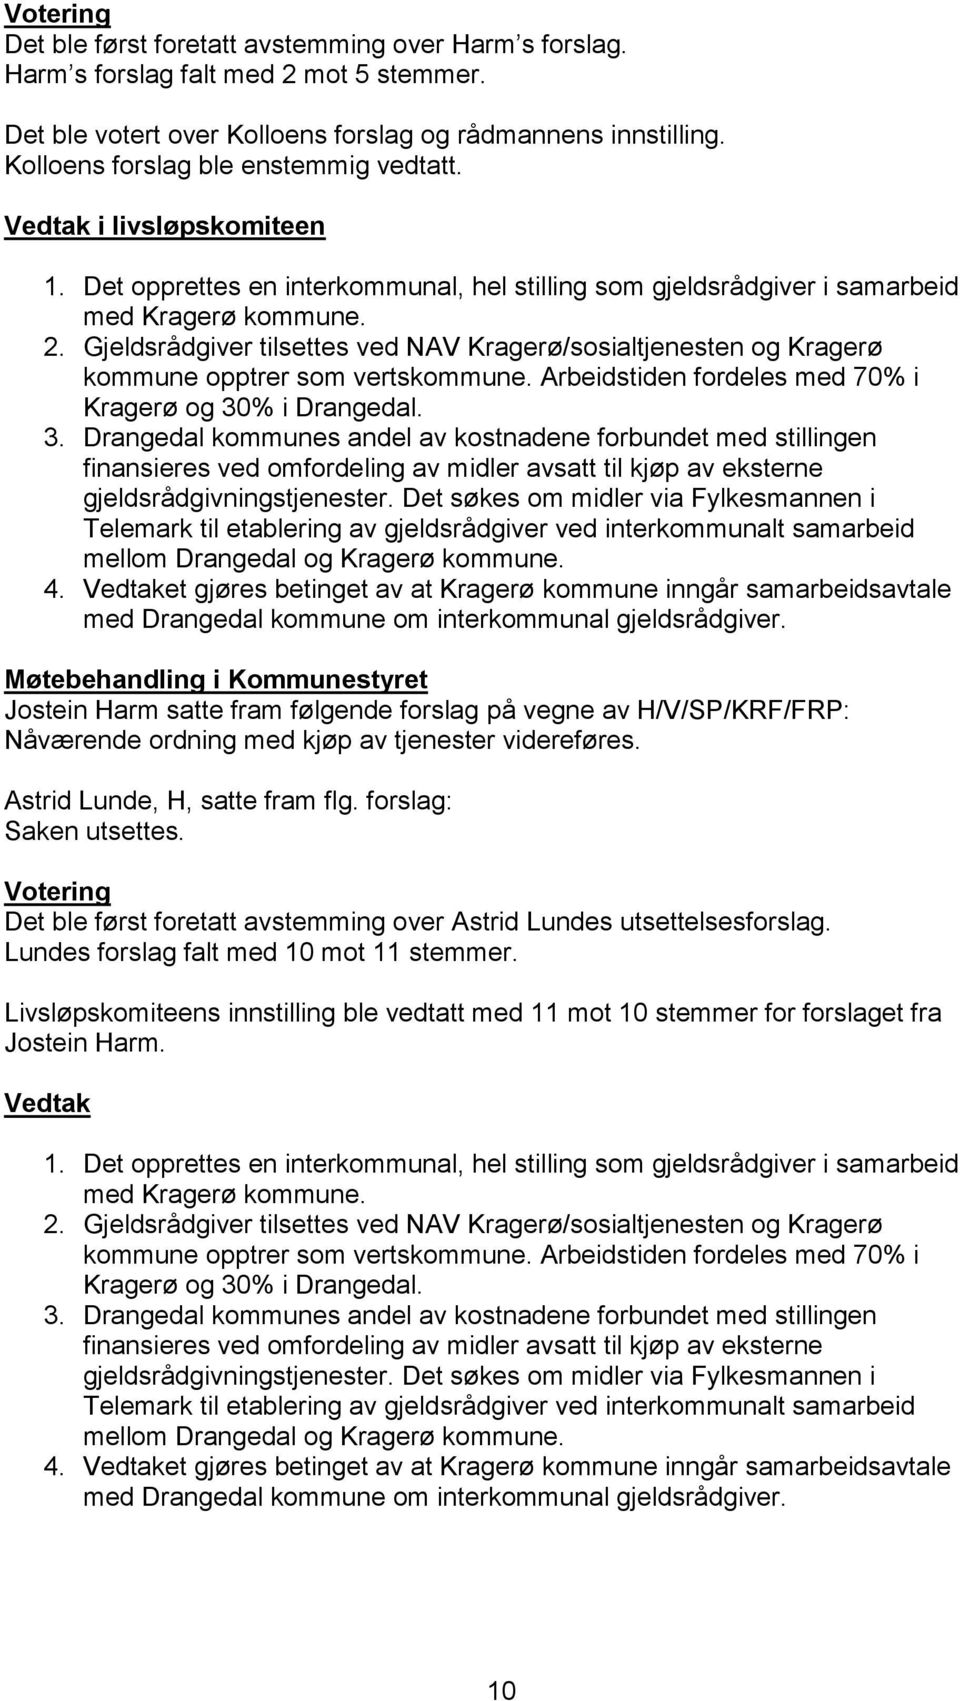 Gjeldsrådgiver tilsettes ved NAV Kragerø/sosialtjenesten og Kragerø kommune opptrer som vertskommune. Arbeidstiden fordeles med 70% i Kragerø og 30